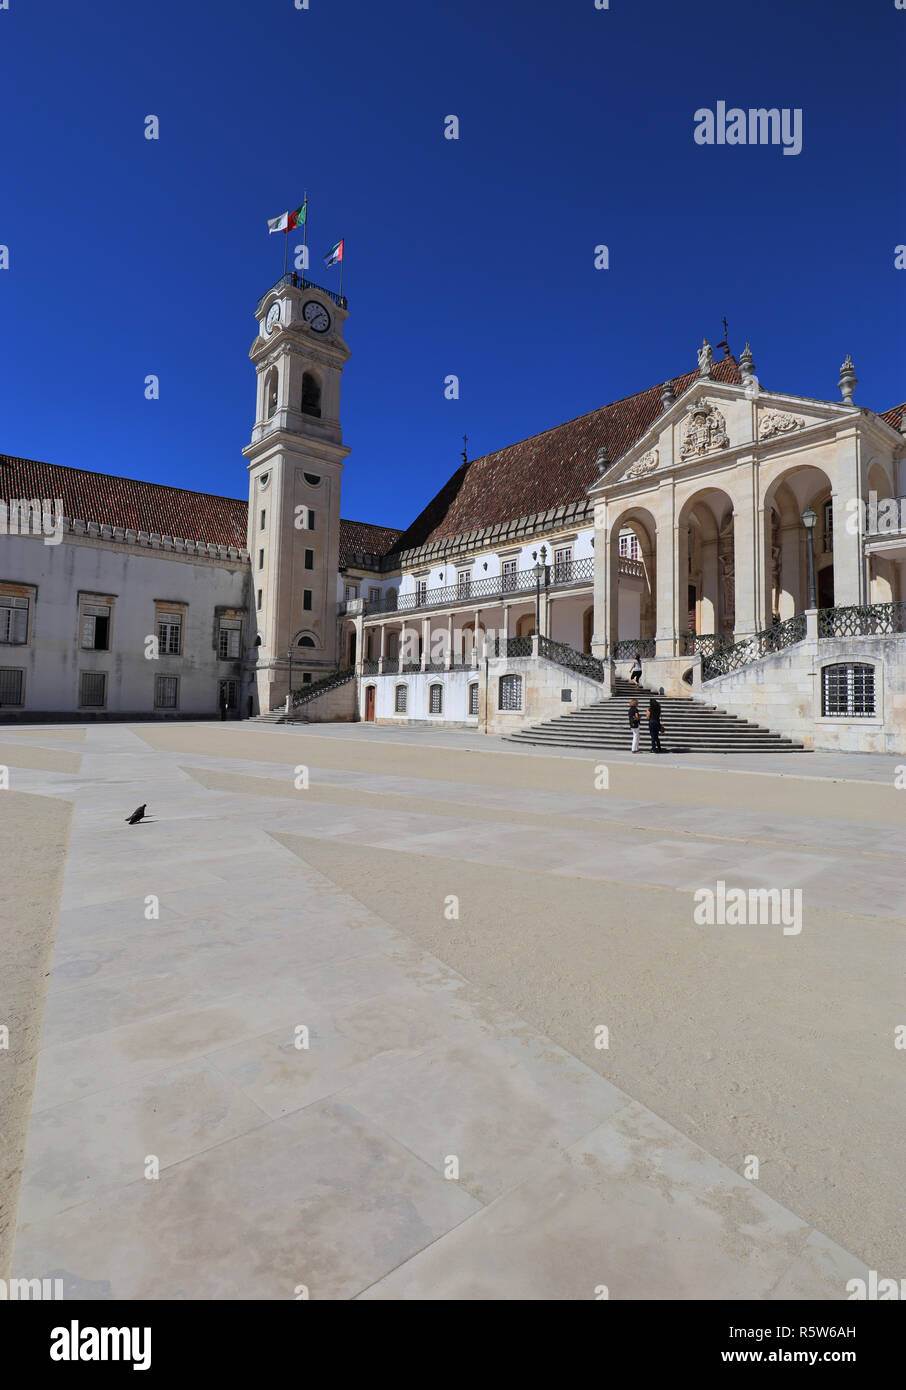 Una imagen captada en una tarde de septiembre en la Plaza de la Universidad de Coimbra. Foto de stock